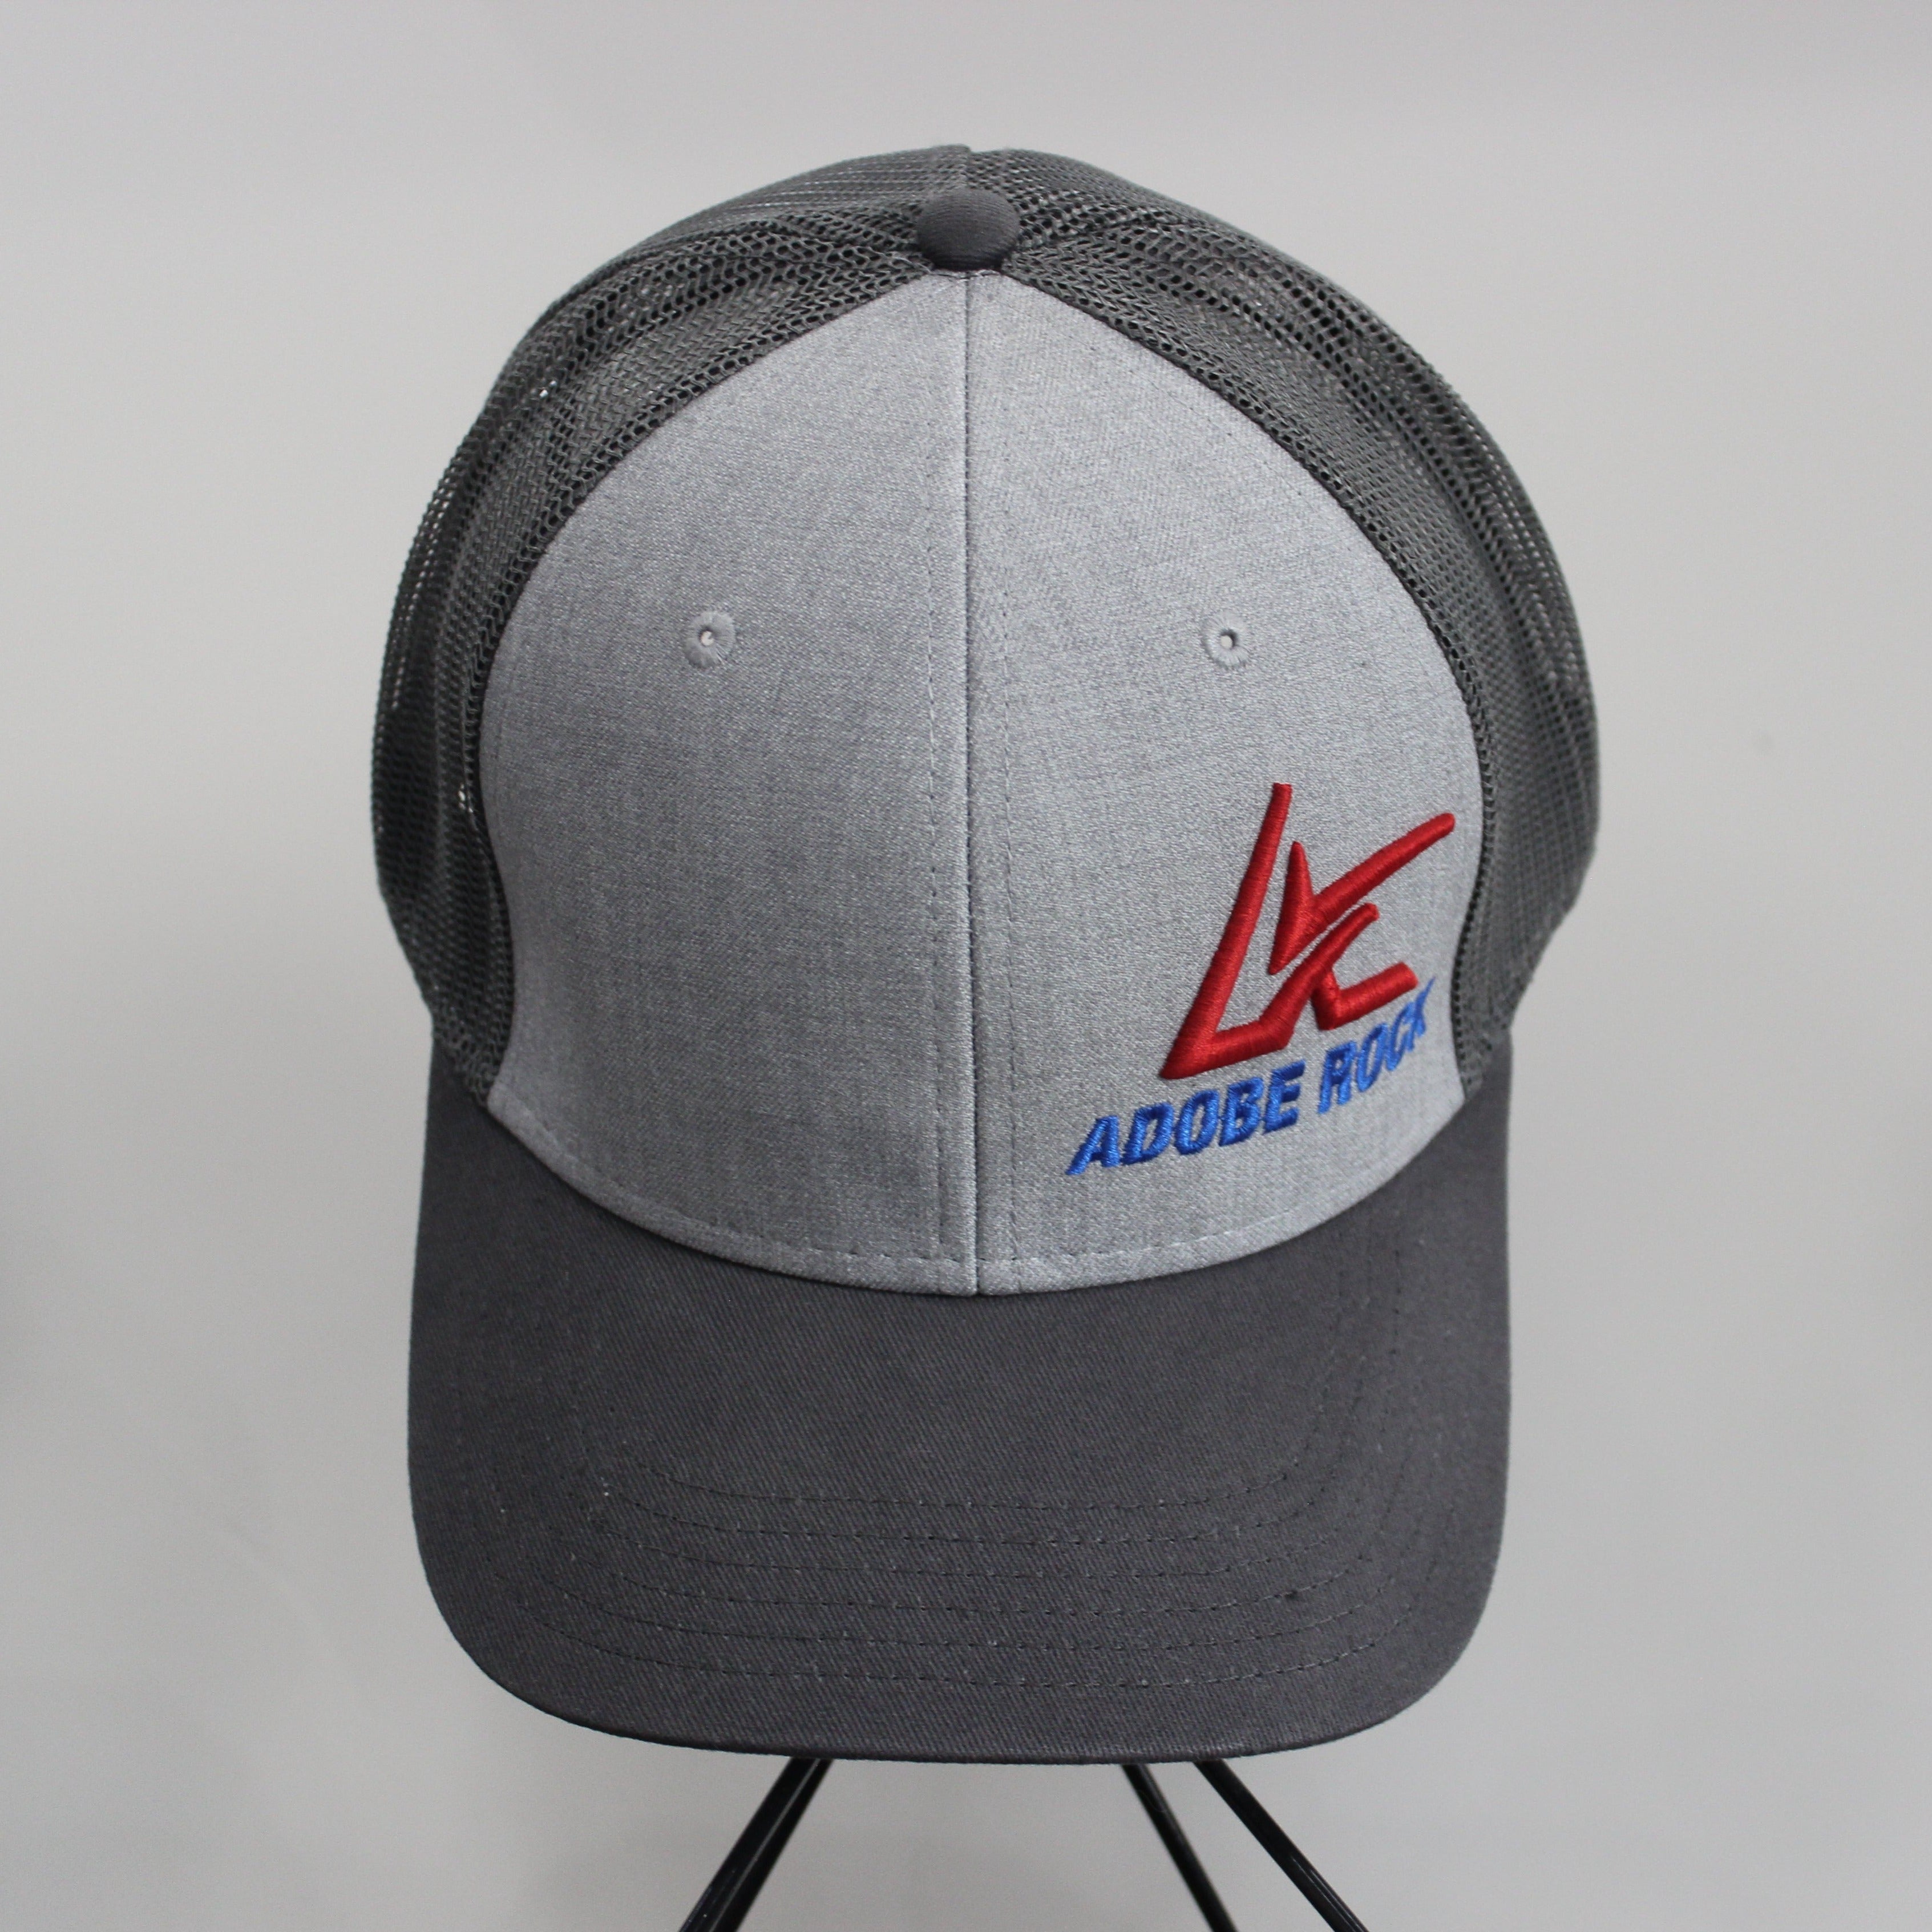 Adobe Rock Trucker Hat